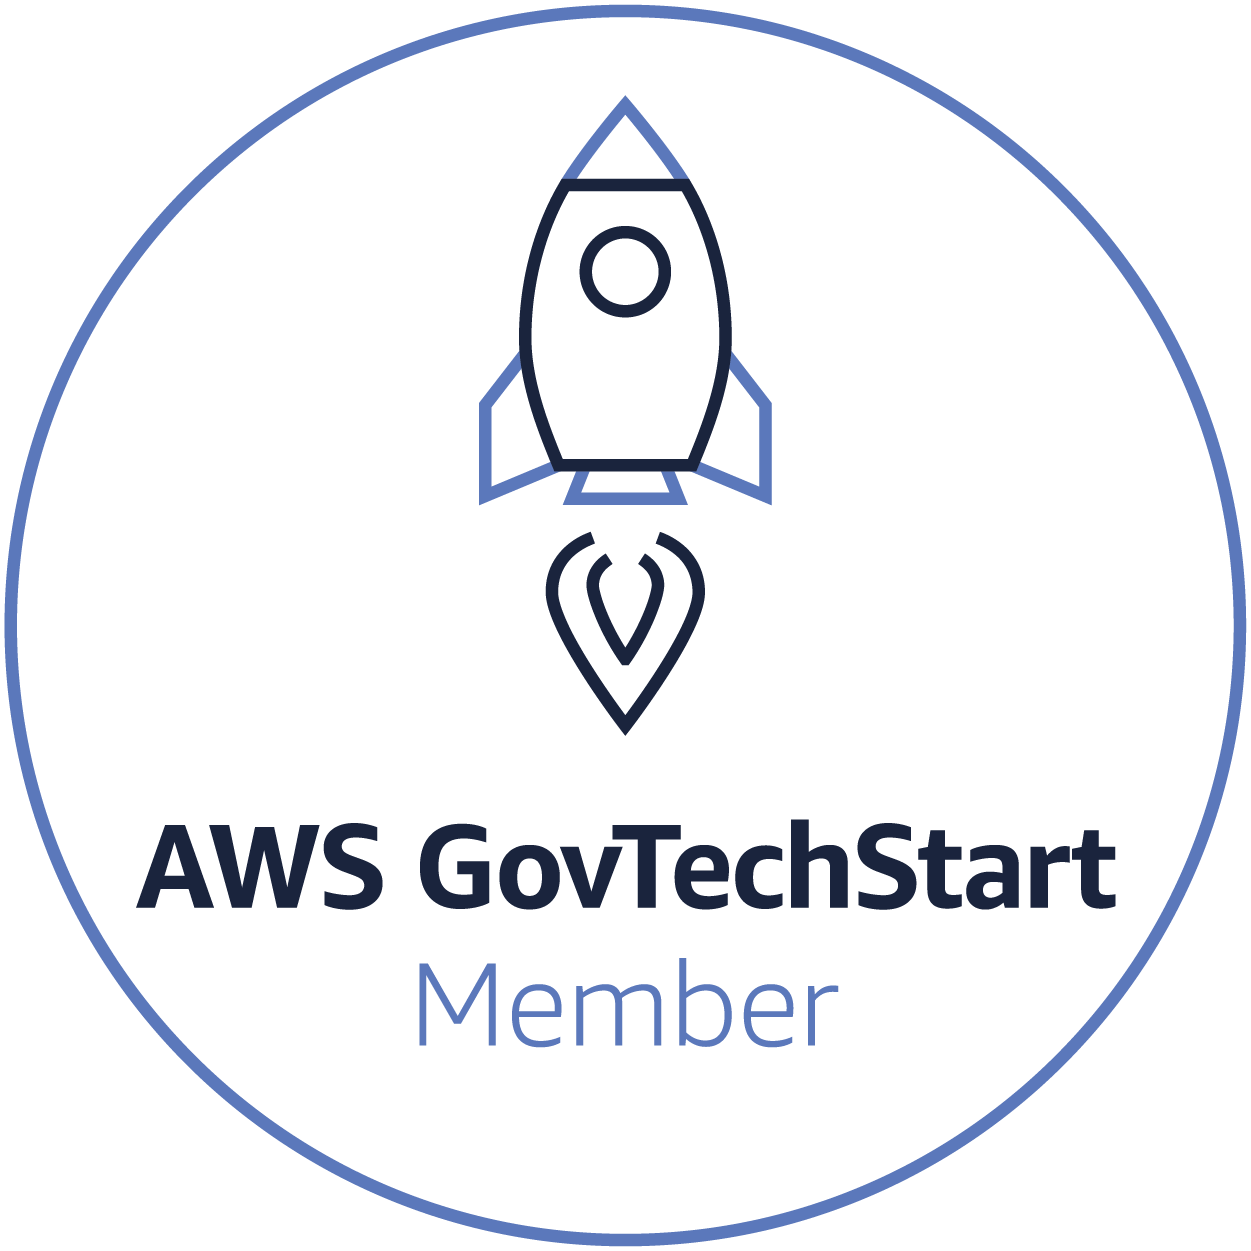 AWS GovTechStart Member